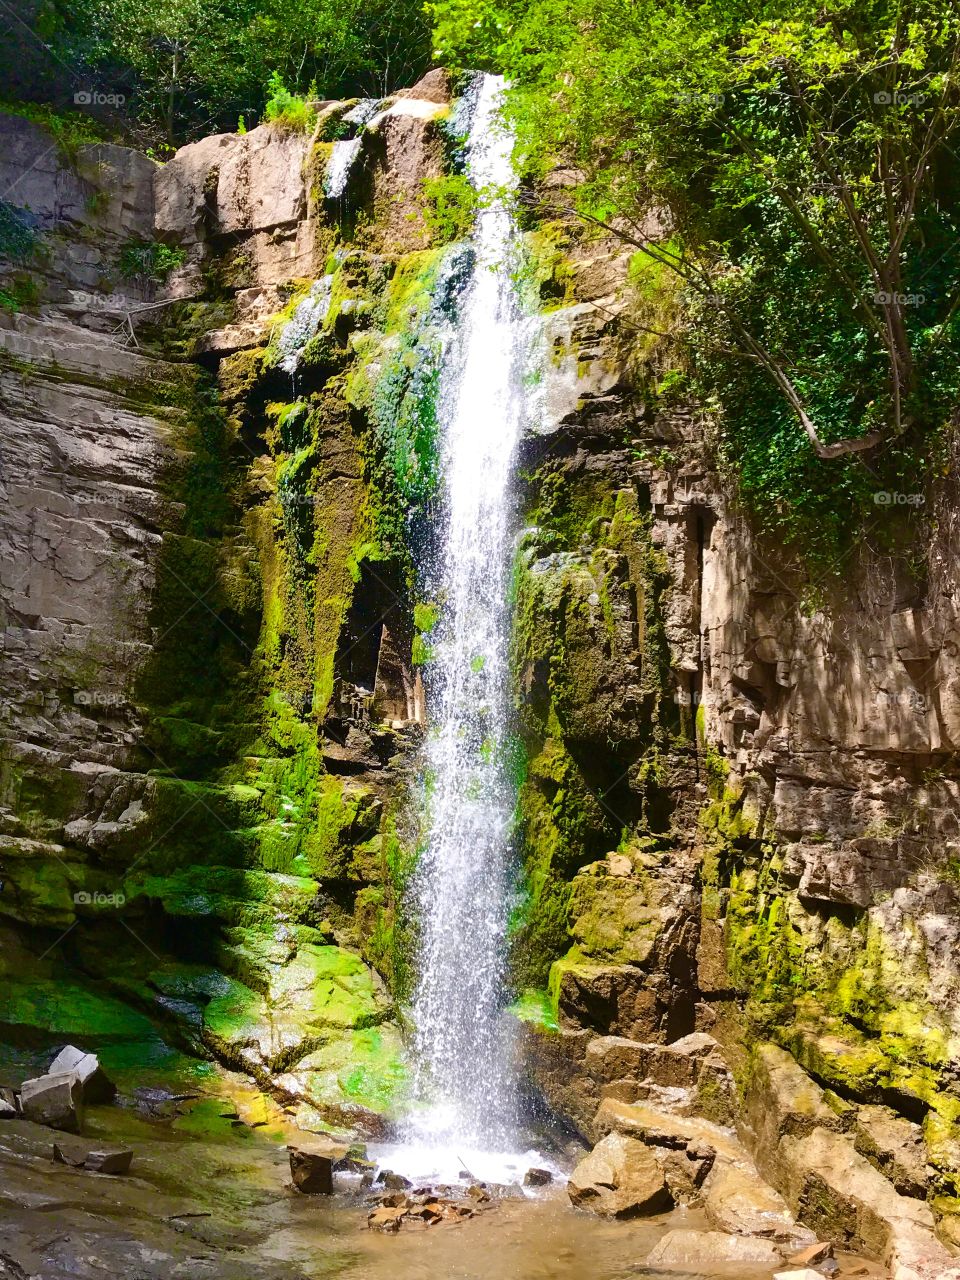 Nice cool waterfall in Tbilisi, Georgia. Amazing. 